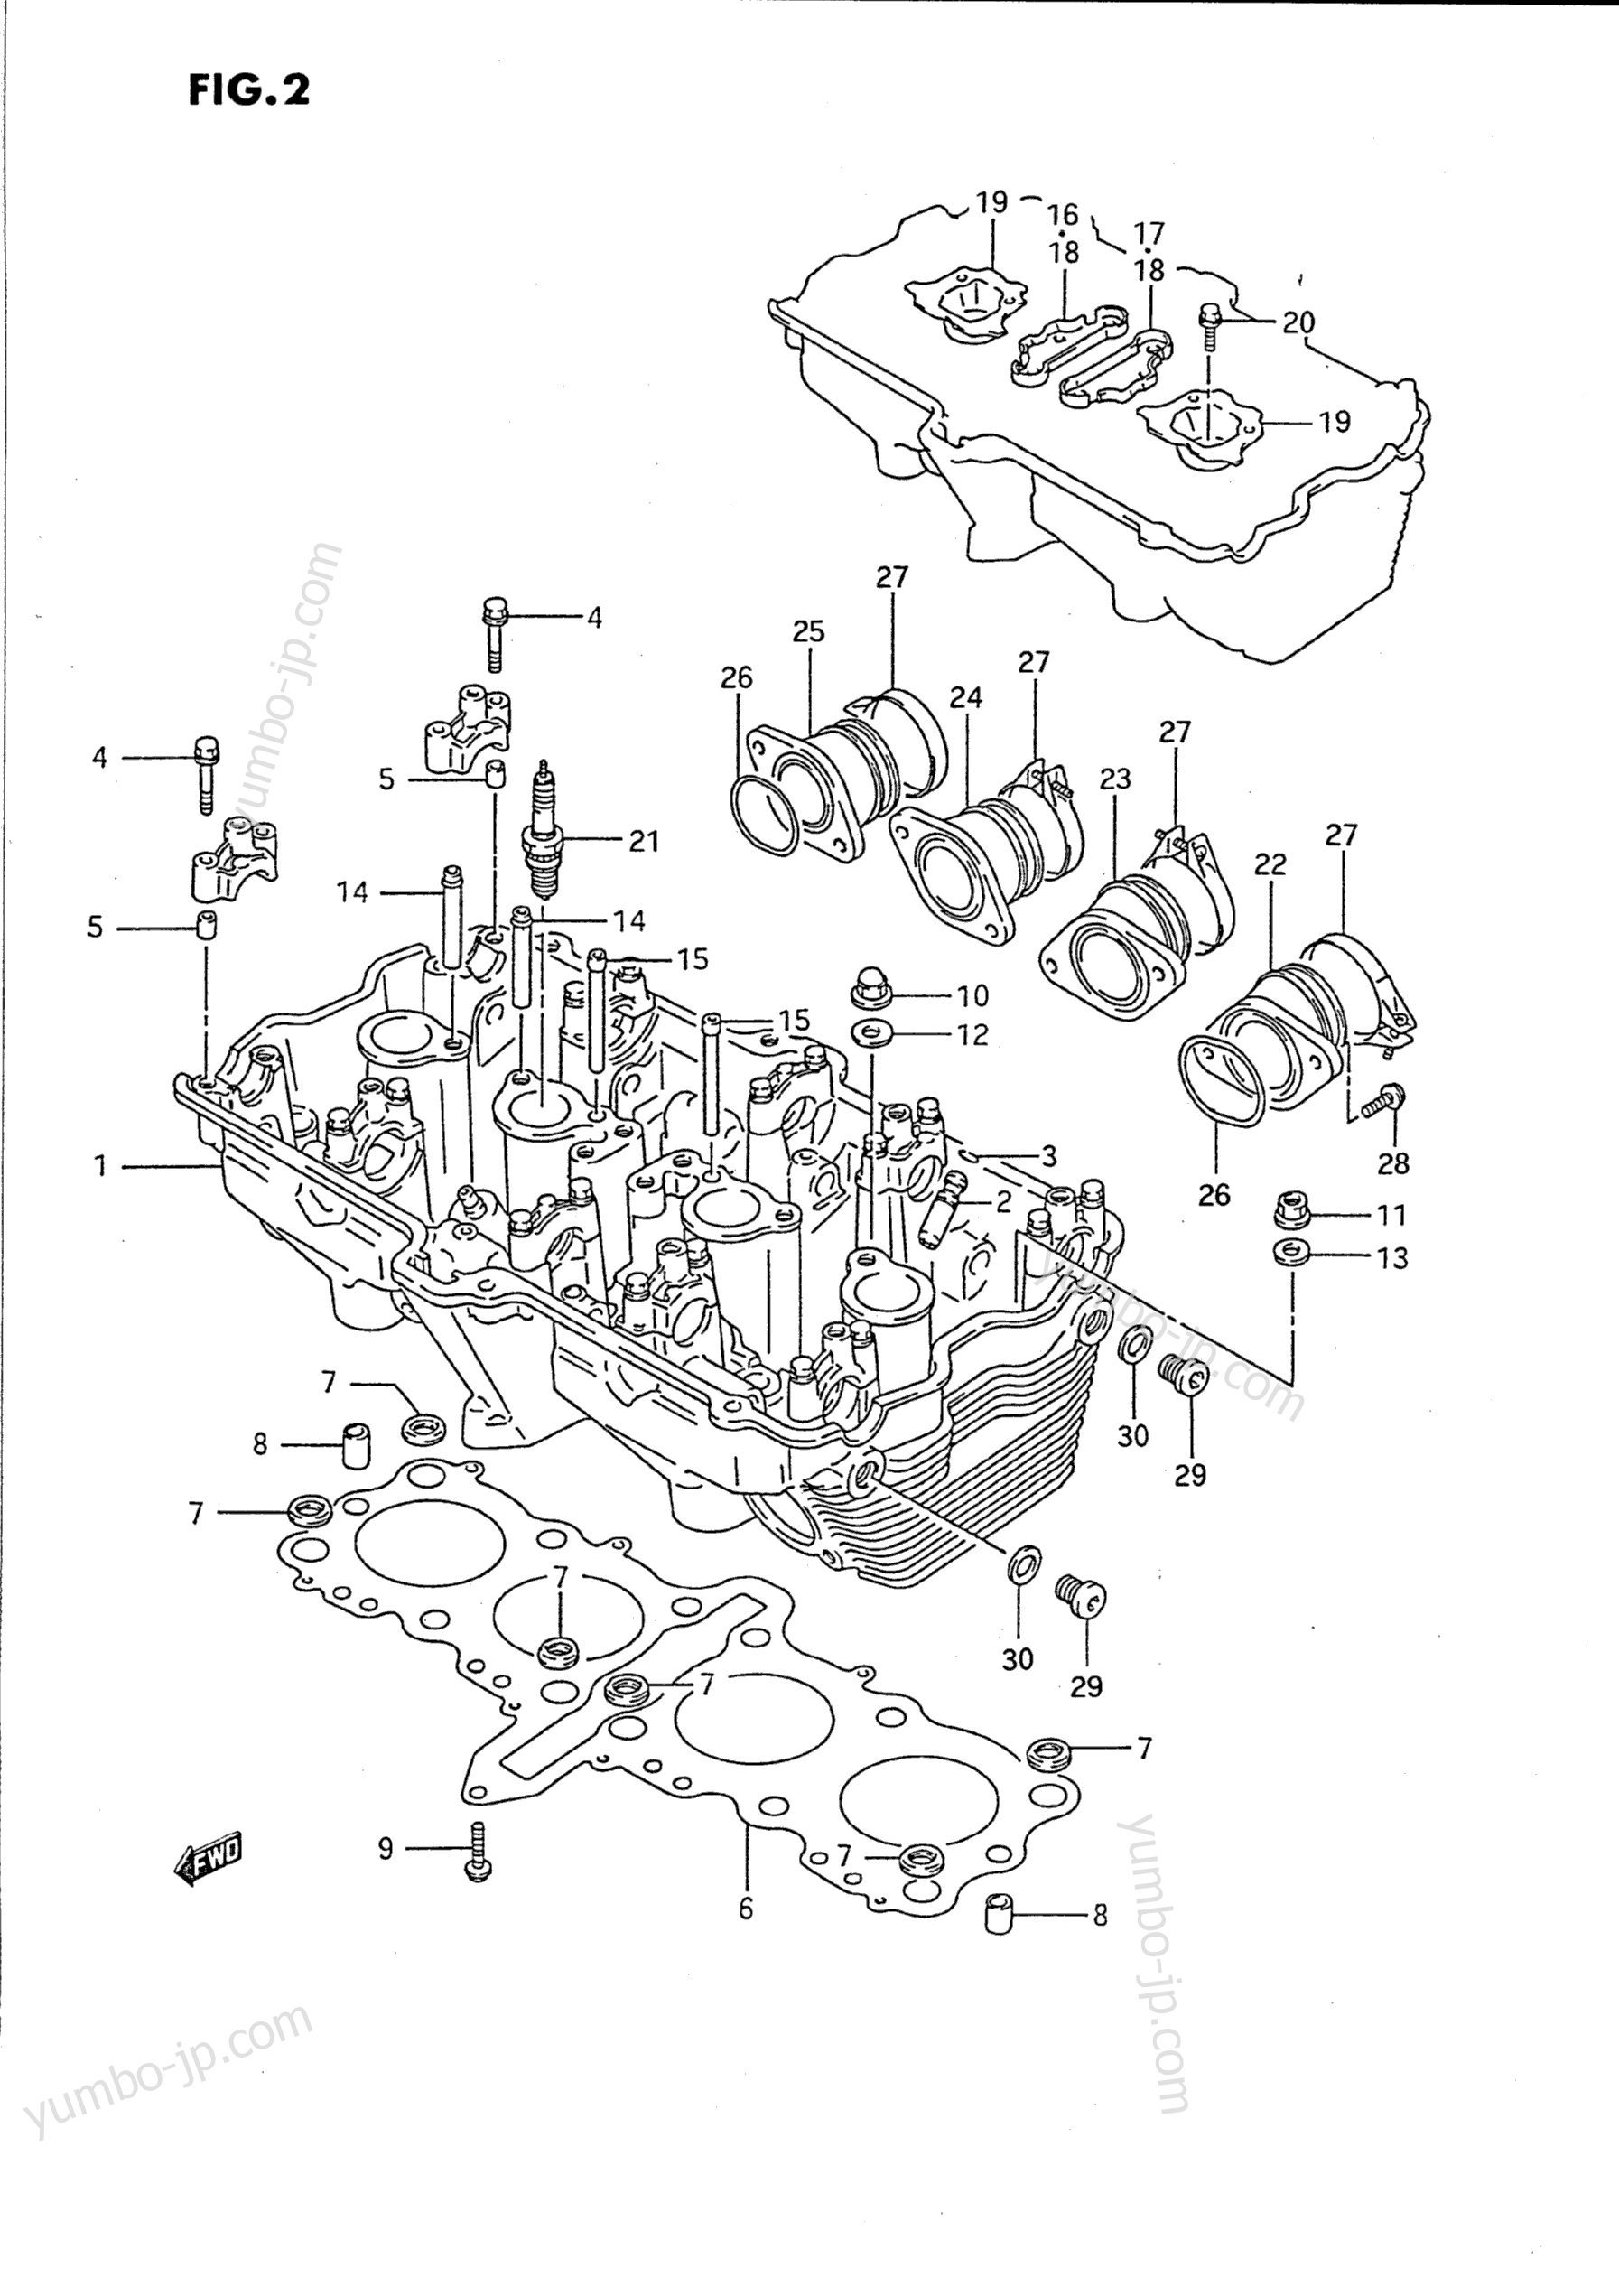 Головка блока цилиндров для мотоциклов SUZUKI Katana (GSX750F) 1990 г.